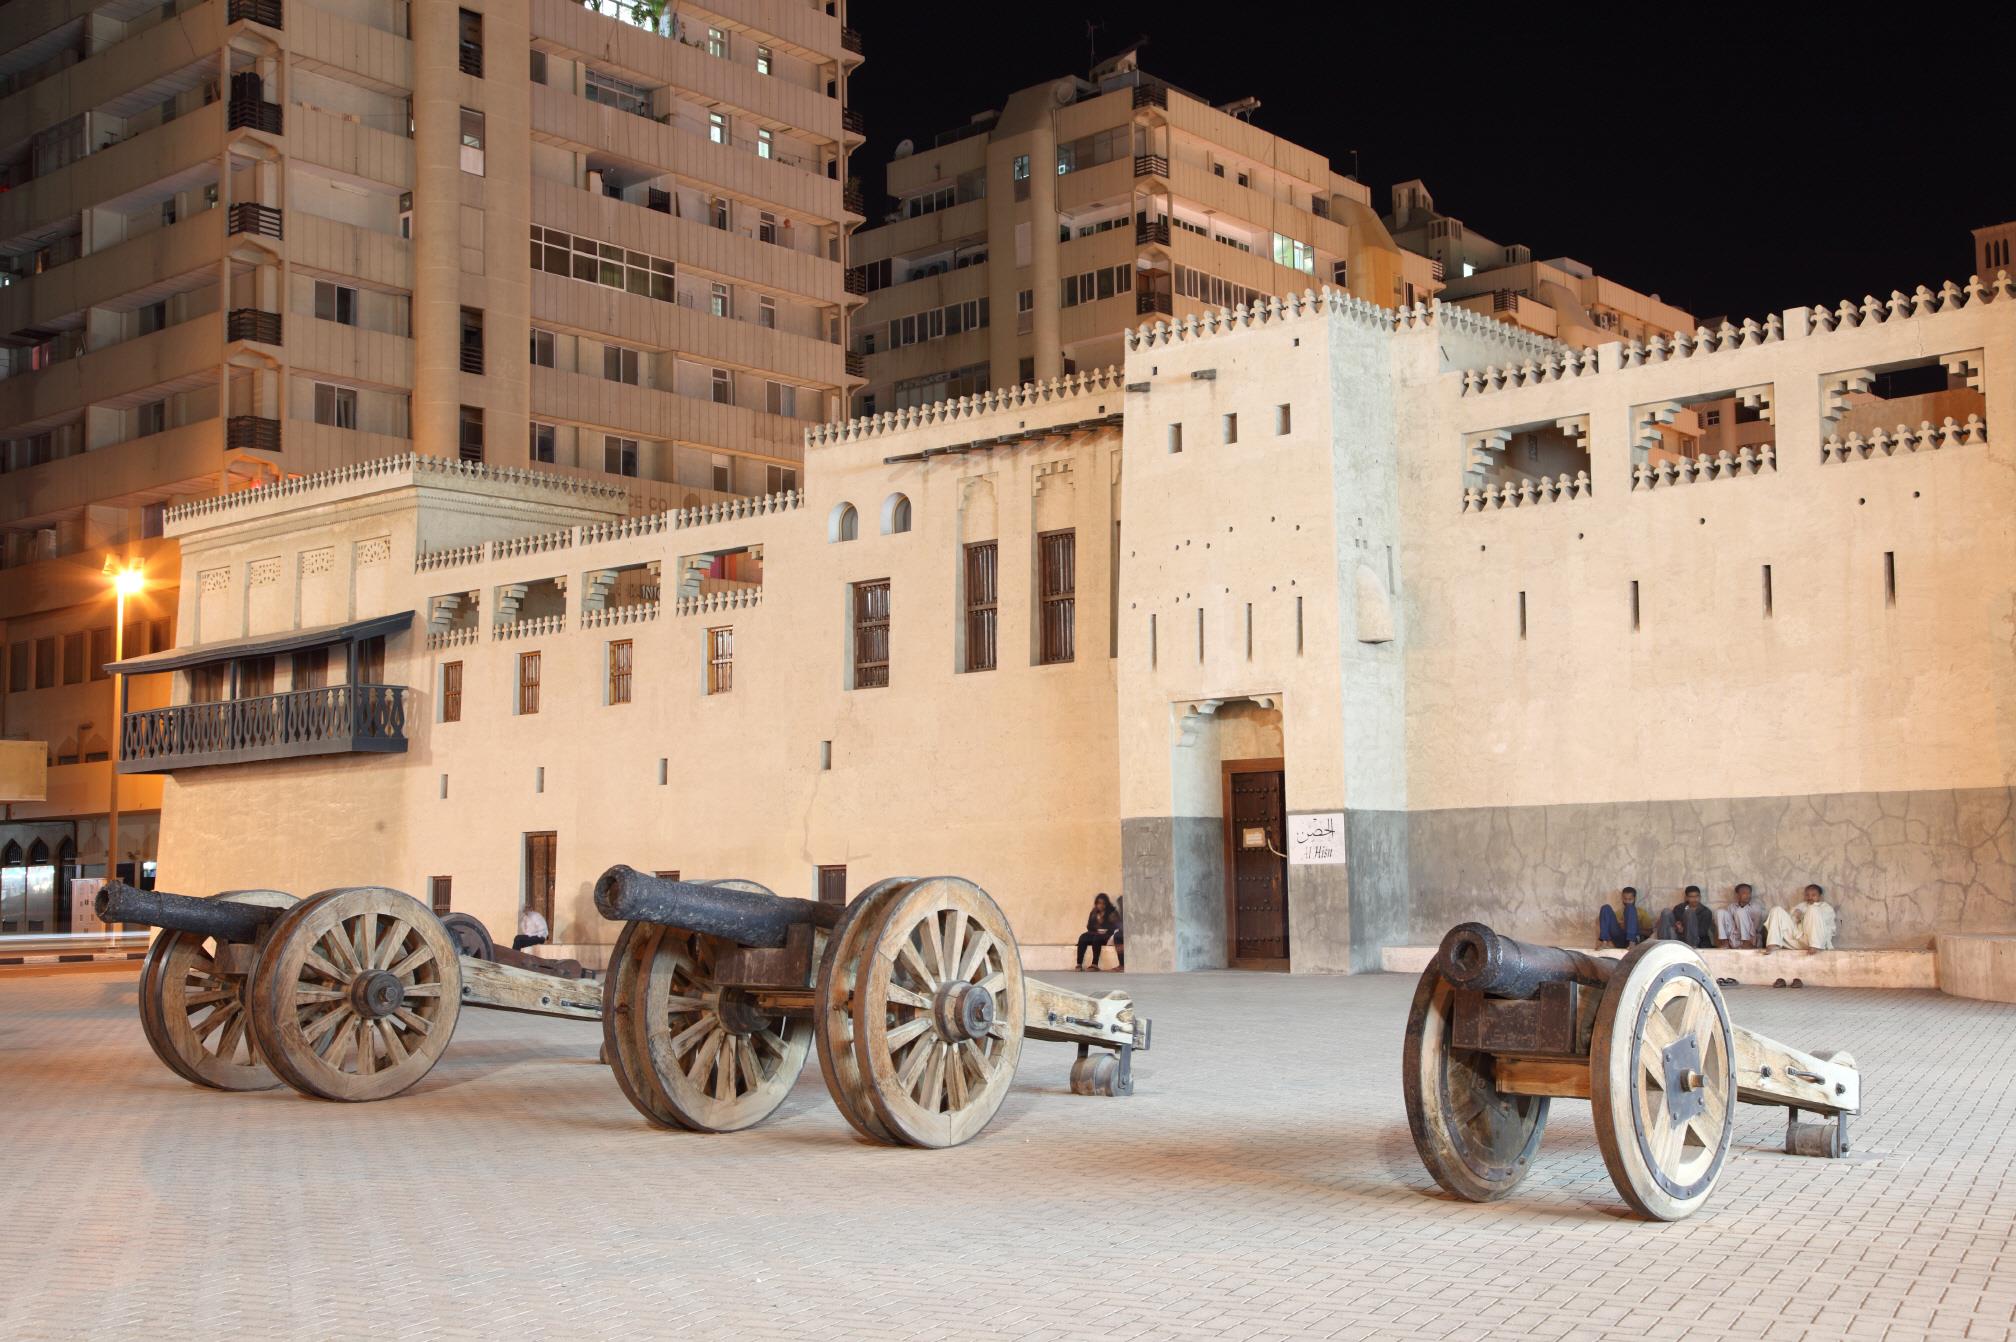 샤르자 헤리티지 지역  Sharjah Heritage area